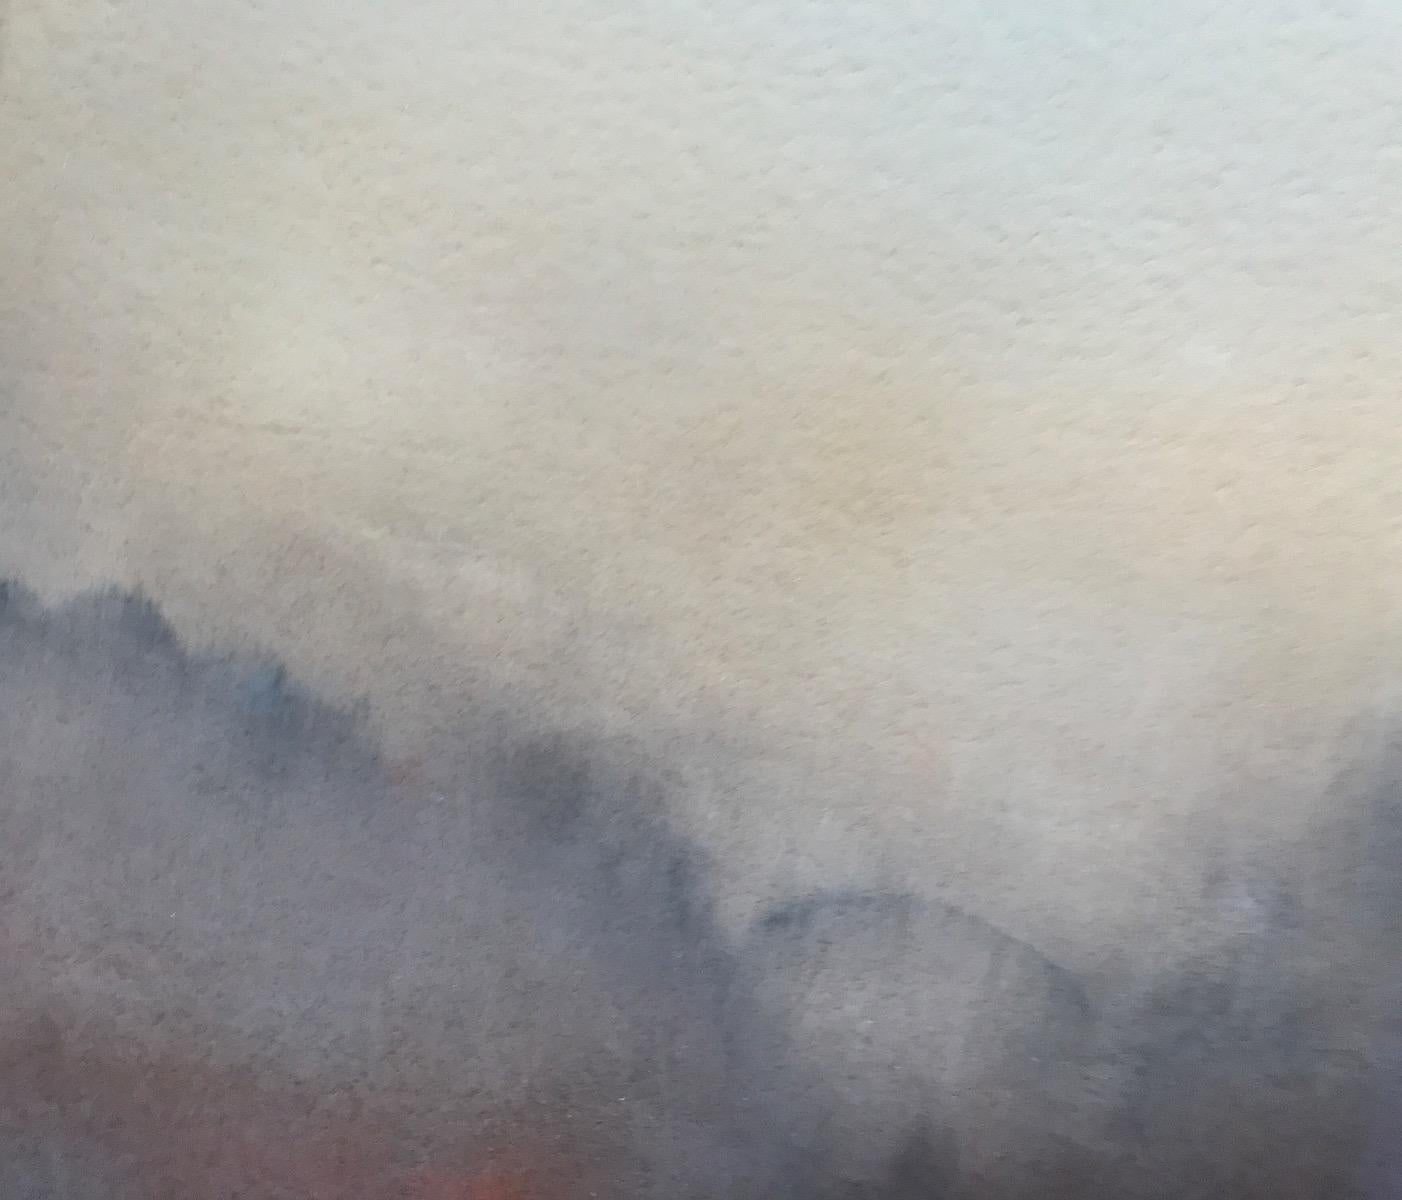 Unbearable Lightness I de Richard Whadcock est un magnifique paysage brumeux représentant un ciel translucide doré, des arbres translucides bruns et un soupçon d'arbres rouille orangée, donnant à la peinture un aspect sombre et